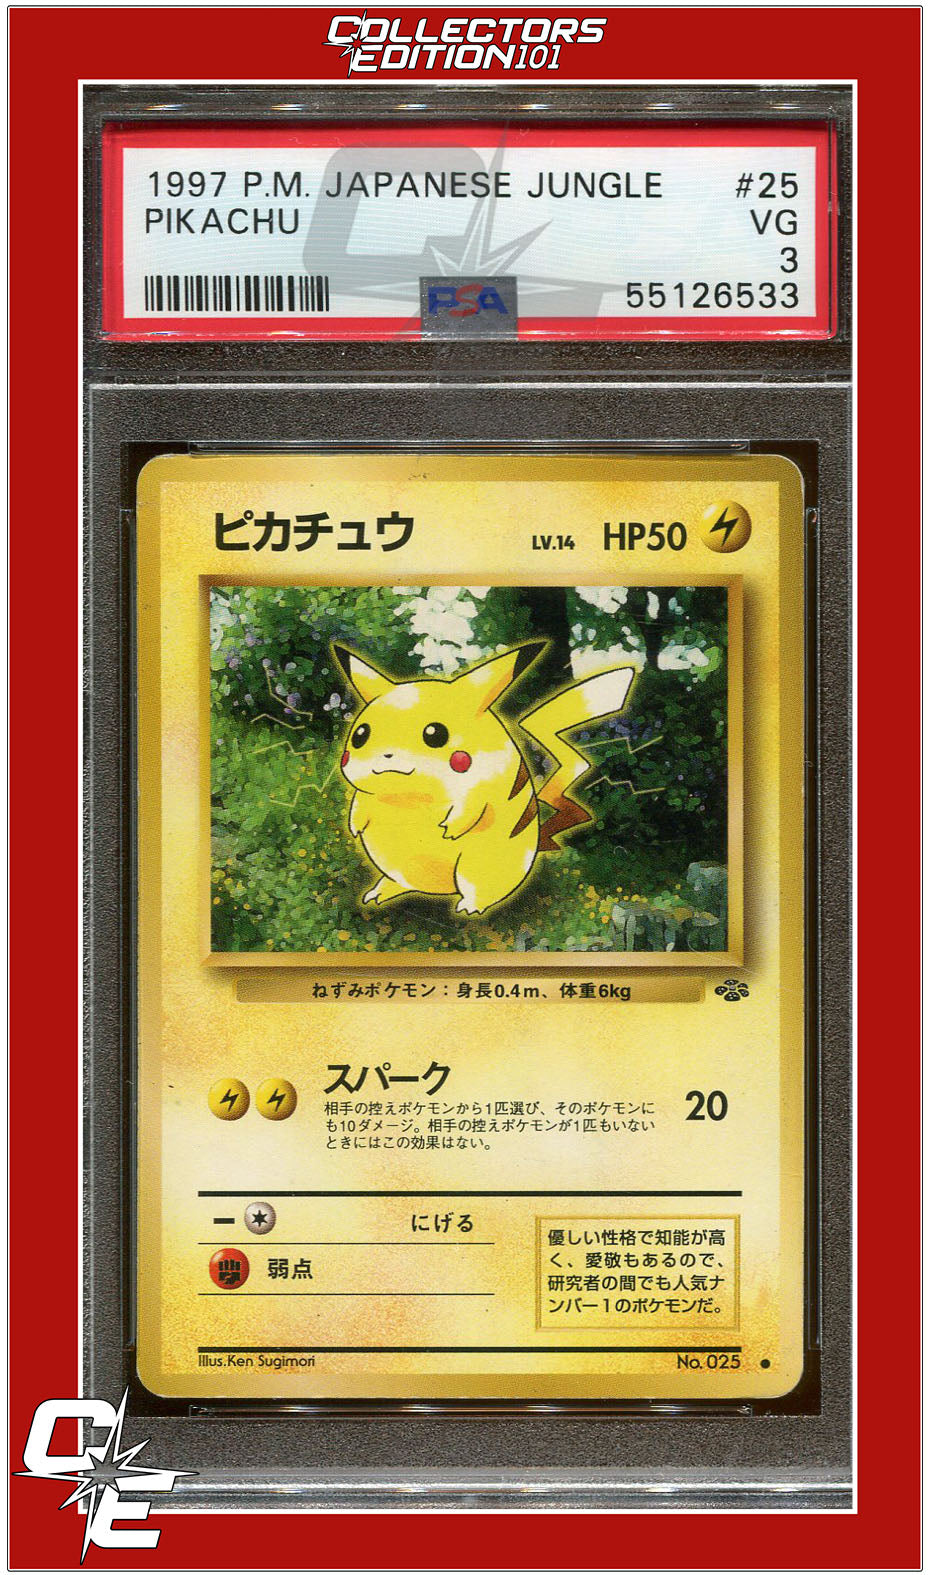 Japanese Jungle 25 Pikachu PSA 3